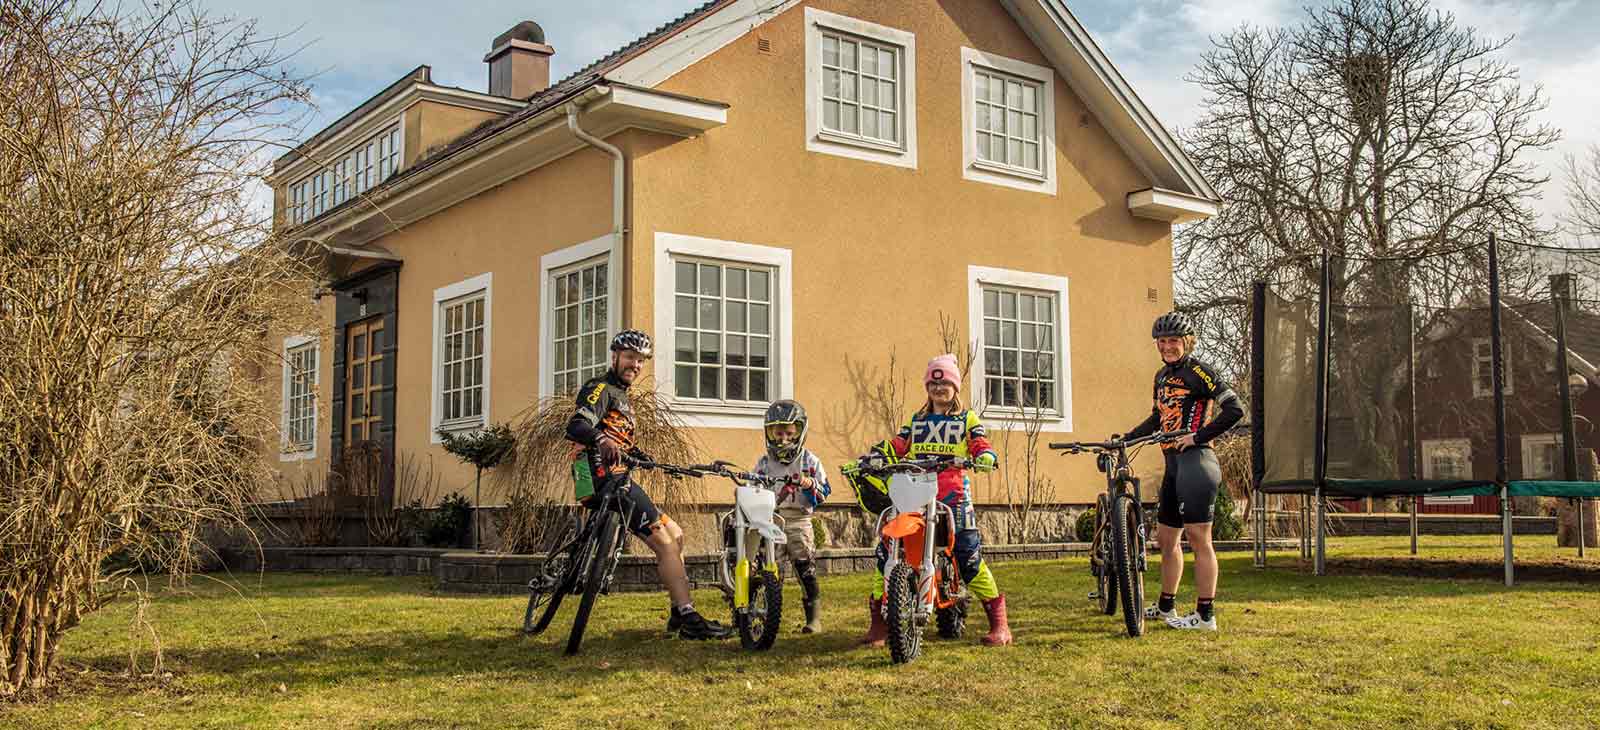 En famile med sykler foran huset sitt